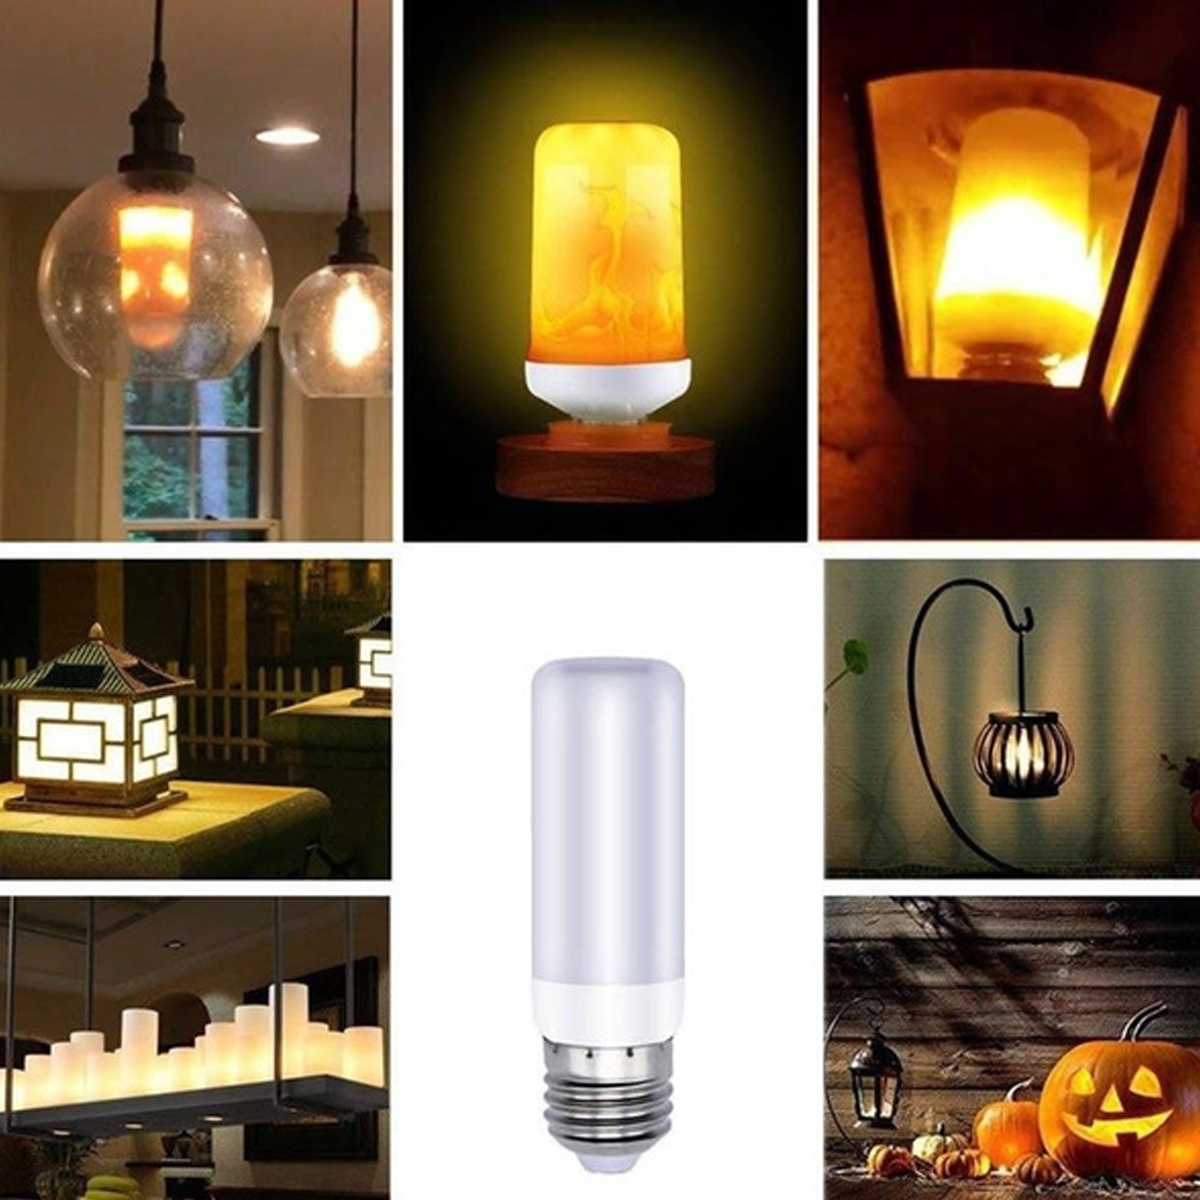 4-Modes-78LED-Flame-Effect-Fire-Light-Bulb-Gravity-Sensor-Lamp-Flickering-Bulb-Lamp-Garden-Lighting--1806214-8